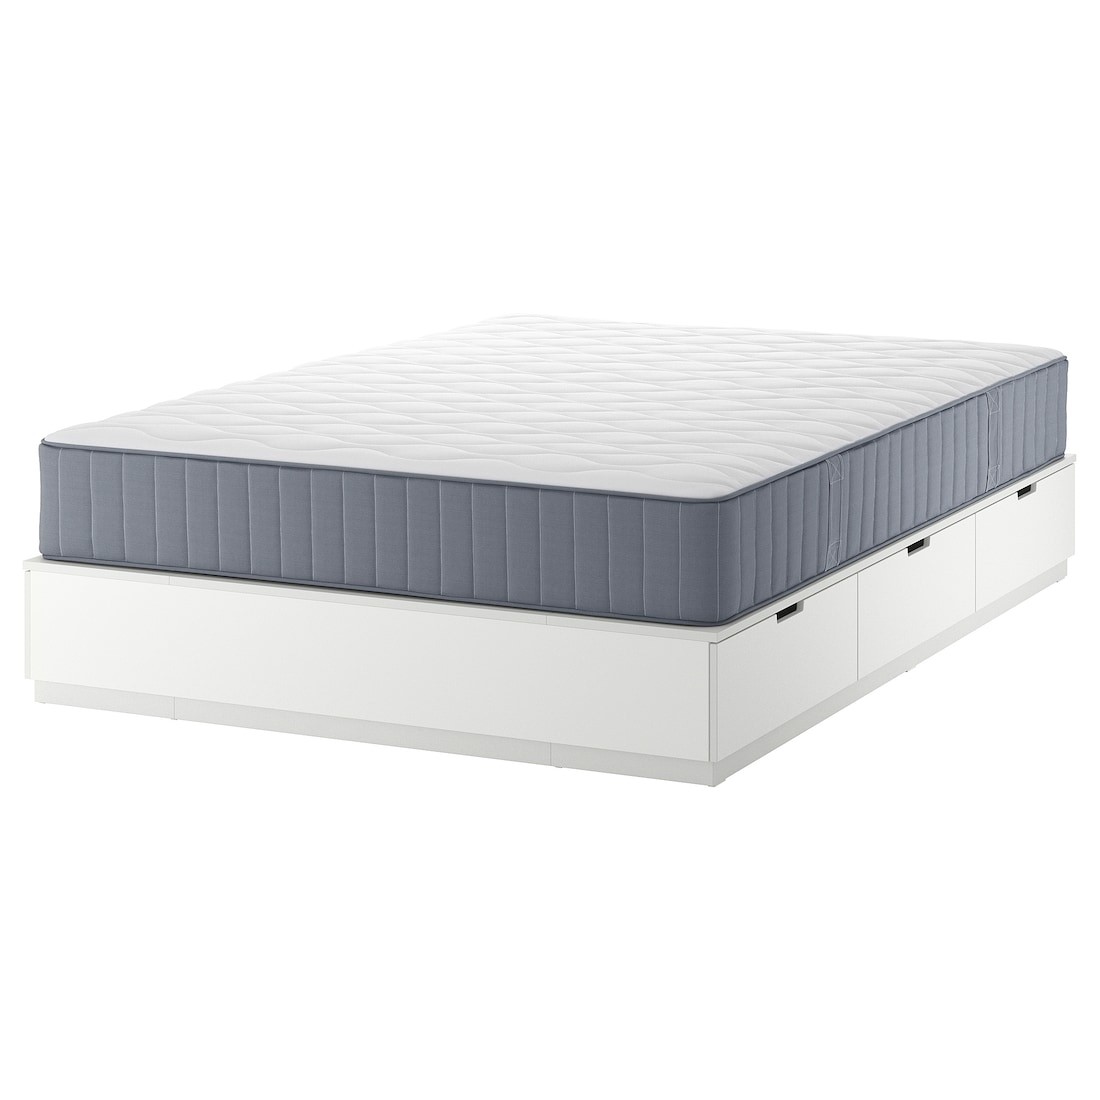 NORDLI Кровать с контейнером и матрасом, белый / Vågstranda жесткий, 140x200 см